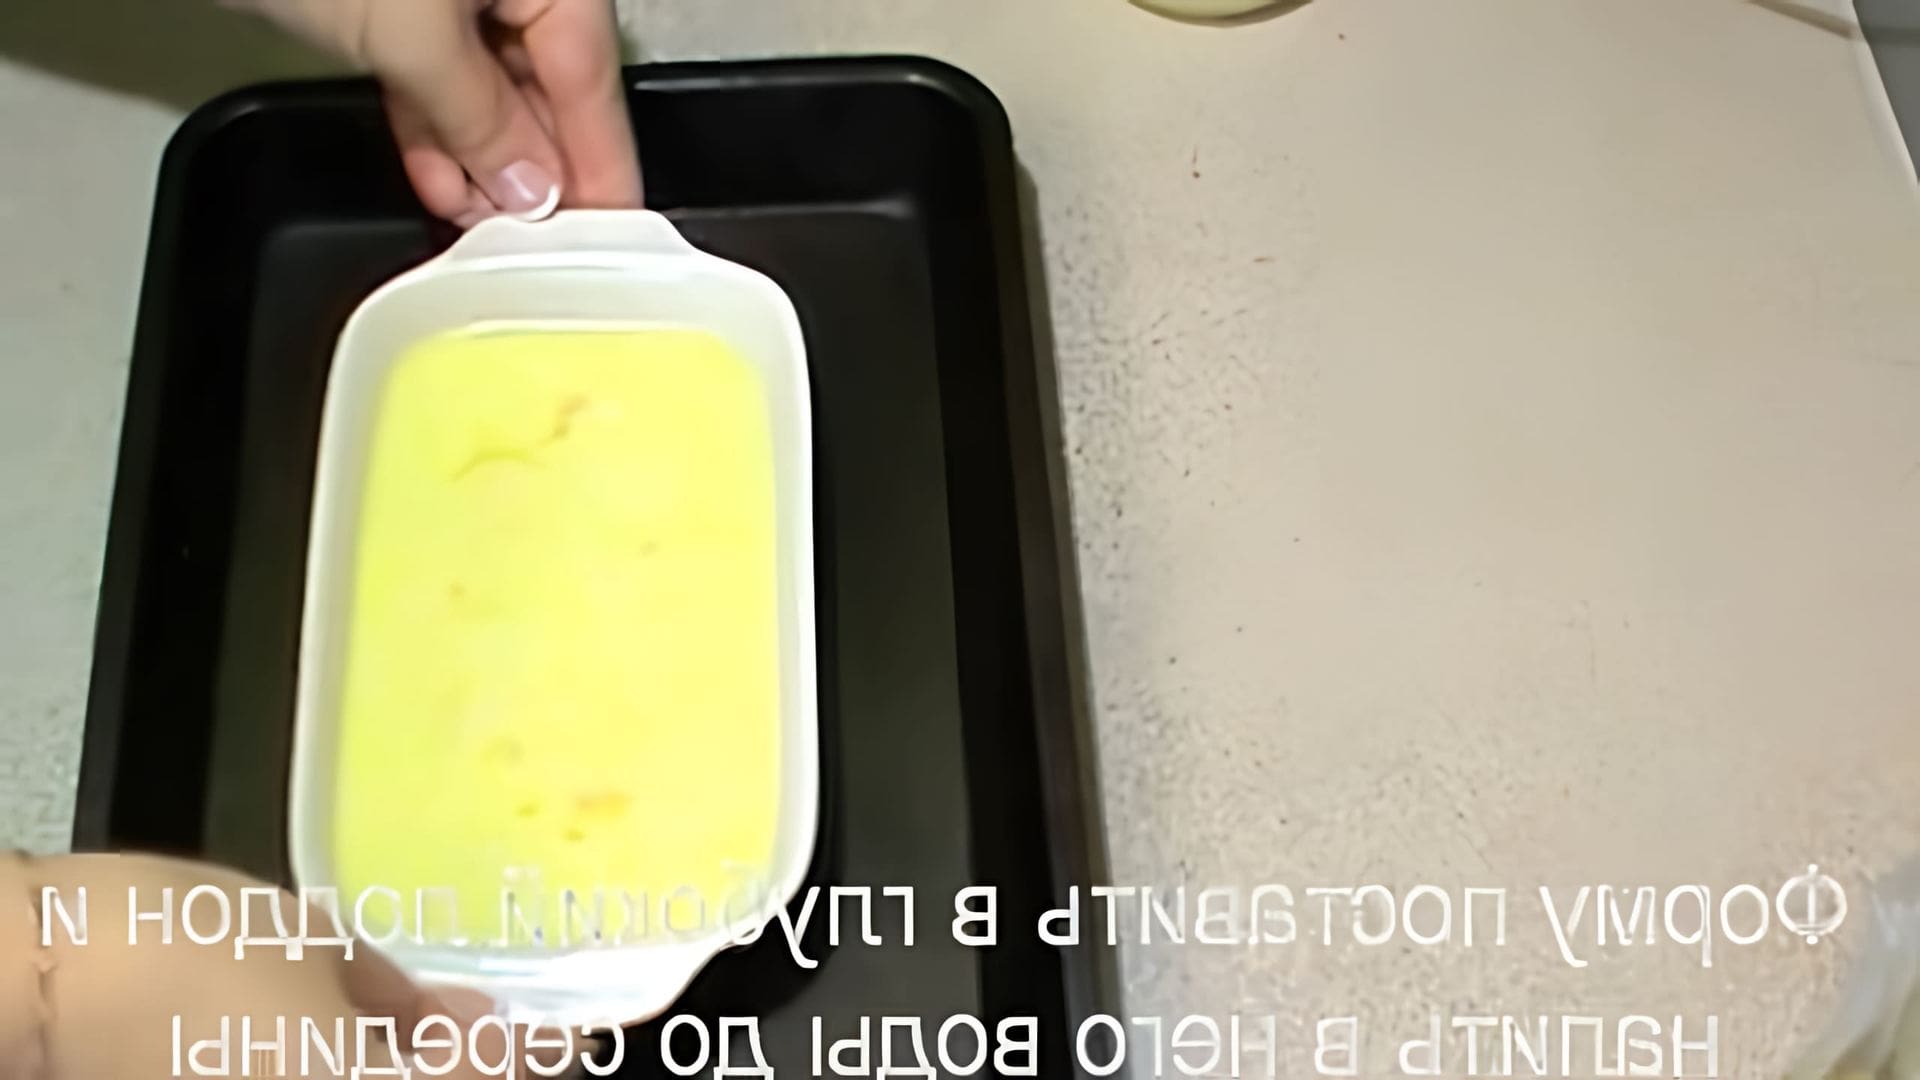 "Пышный омлет Дю" - это видео-ролик, который рассказывает о рецепте омлета по диете Дюкана